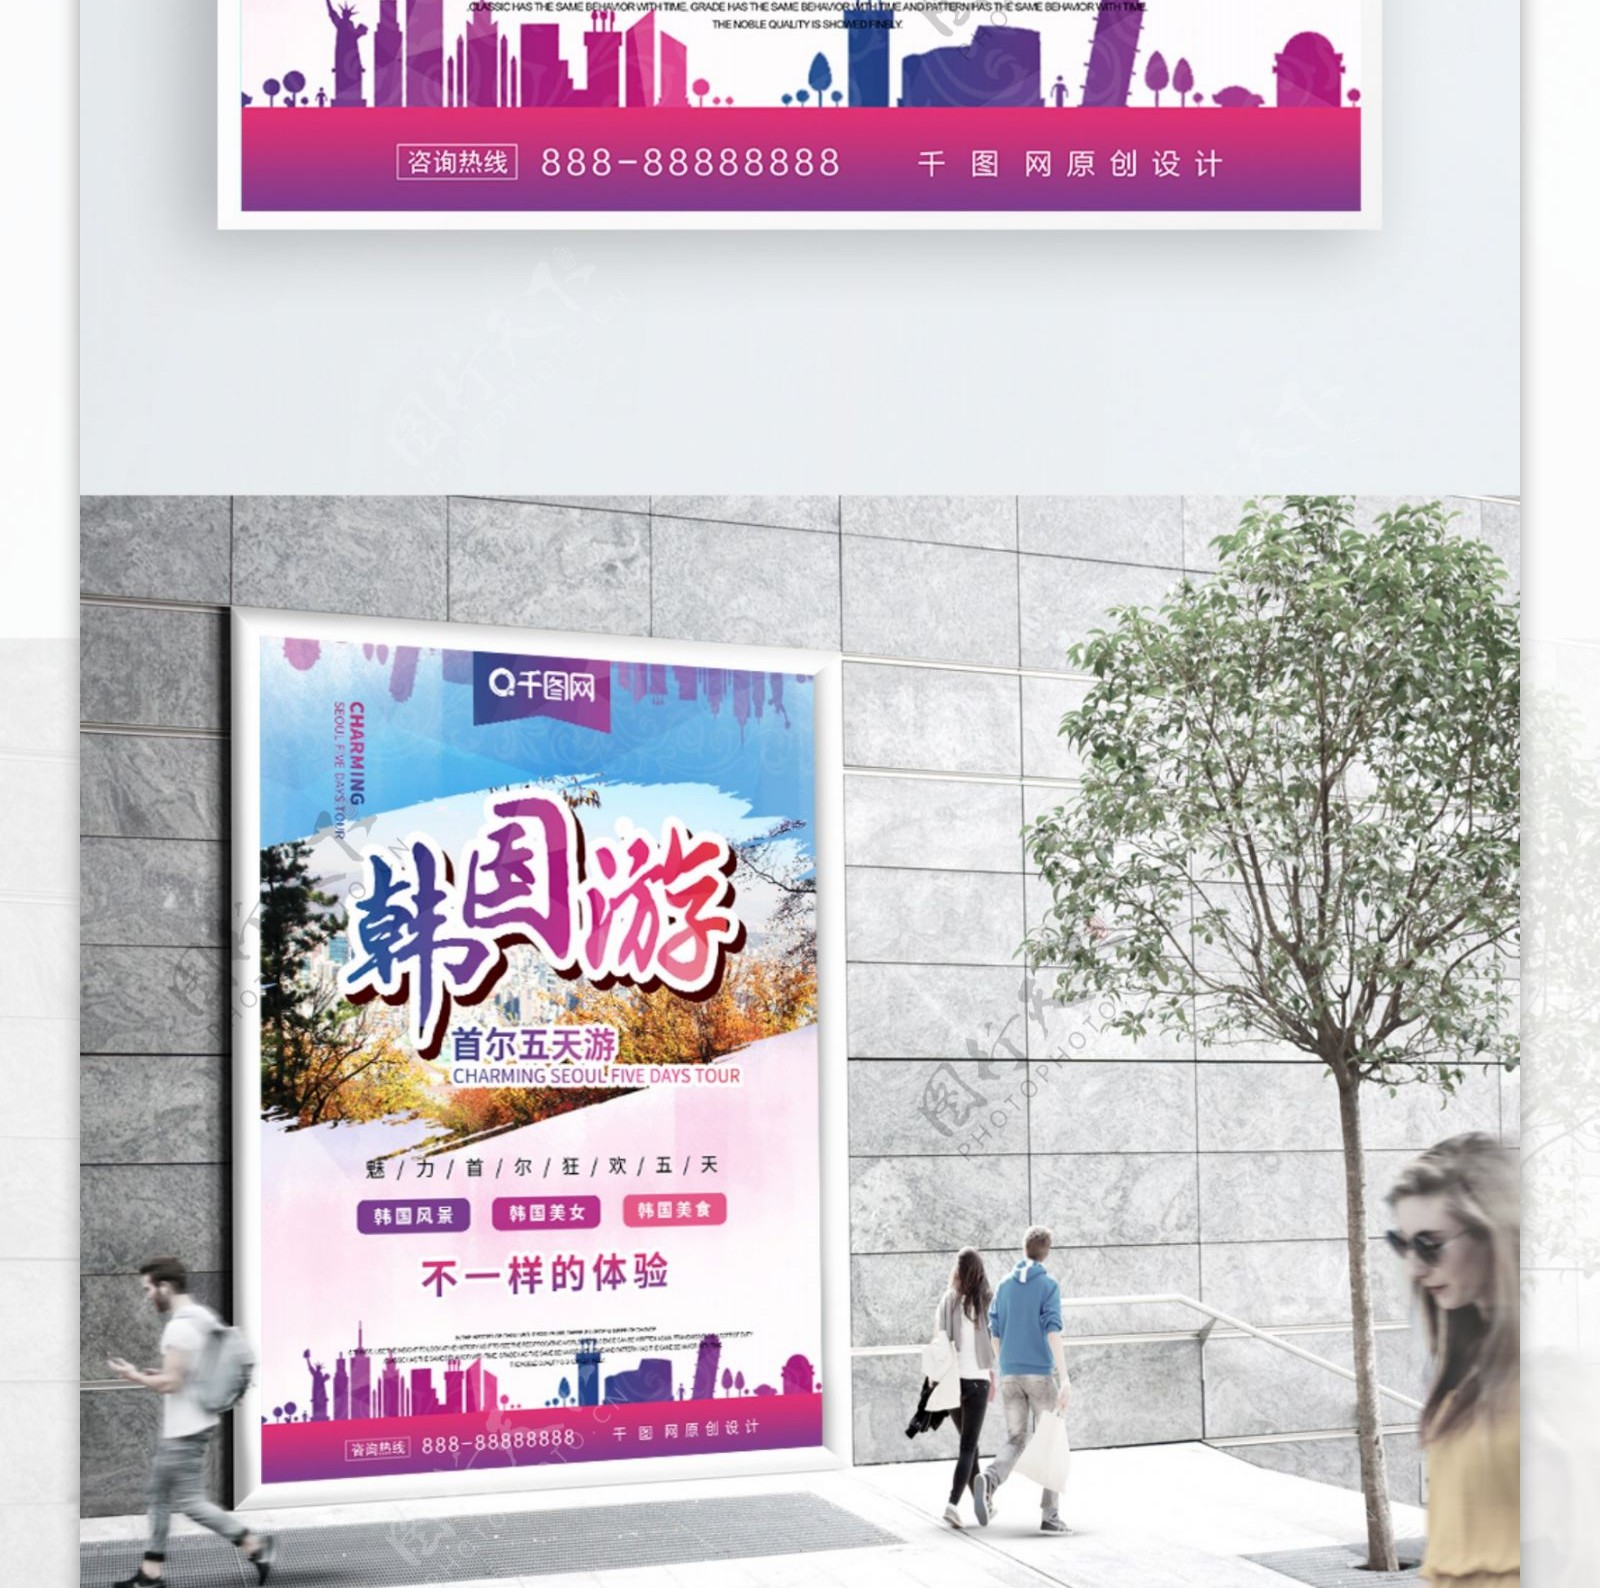 社区风韩国首尔旅游宣传海报